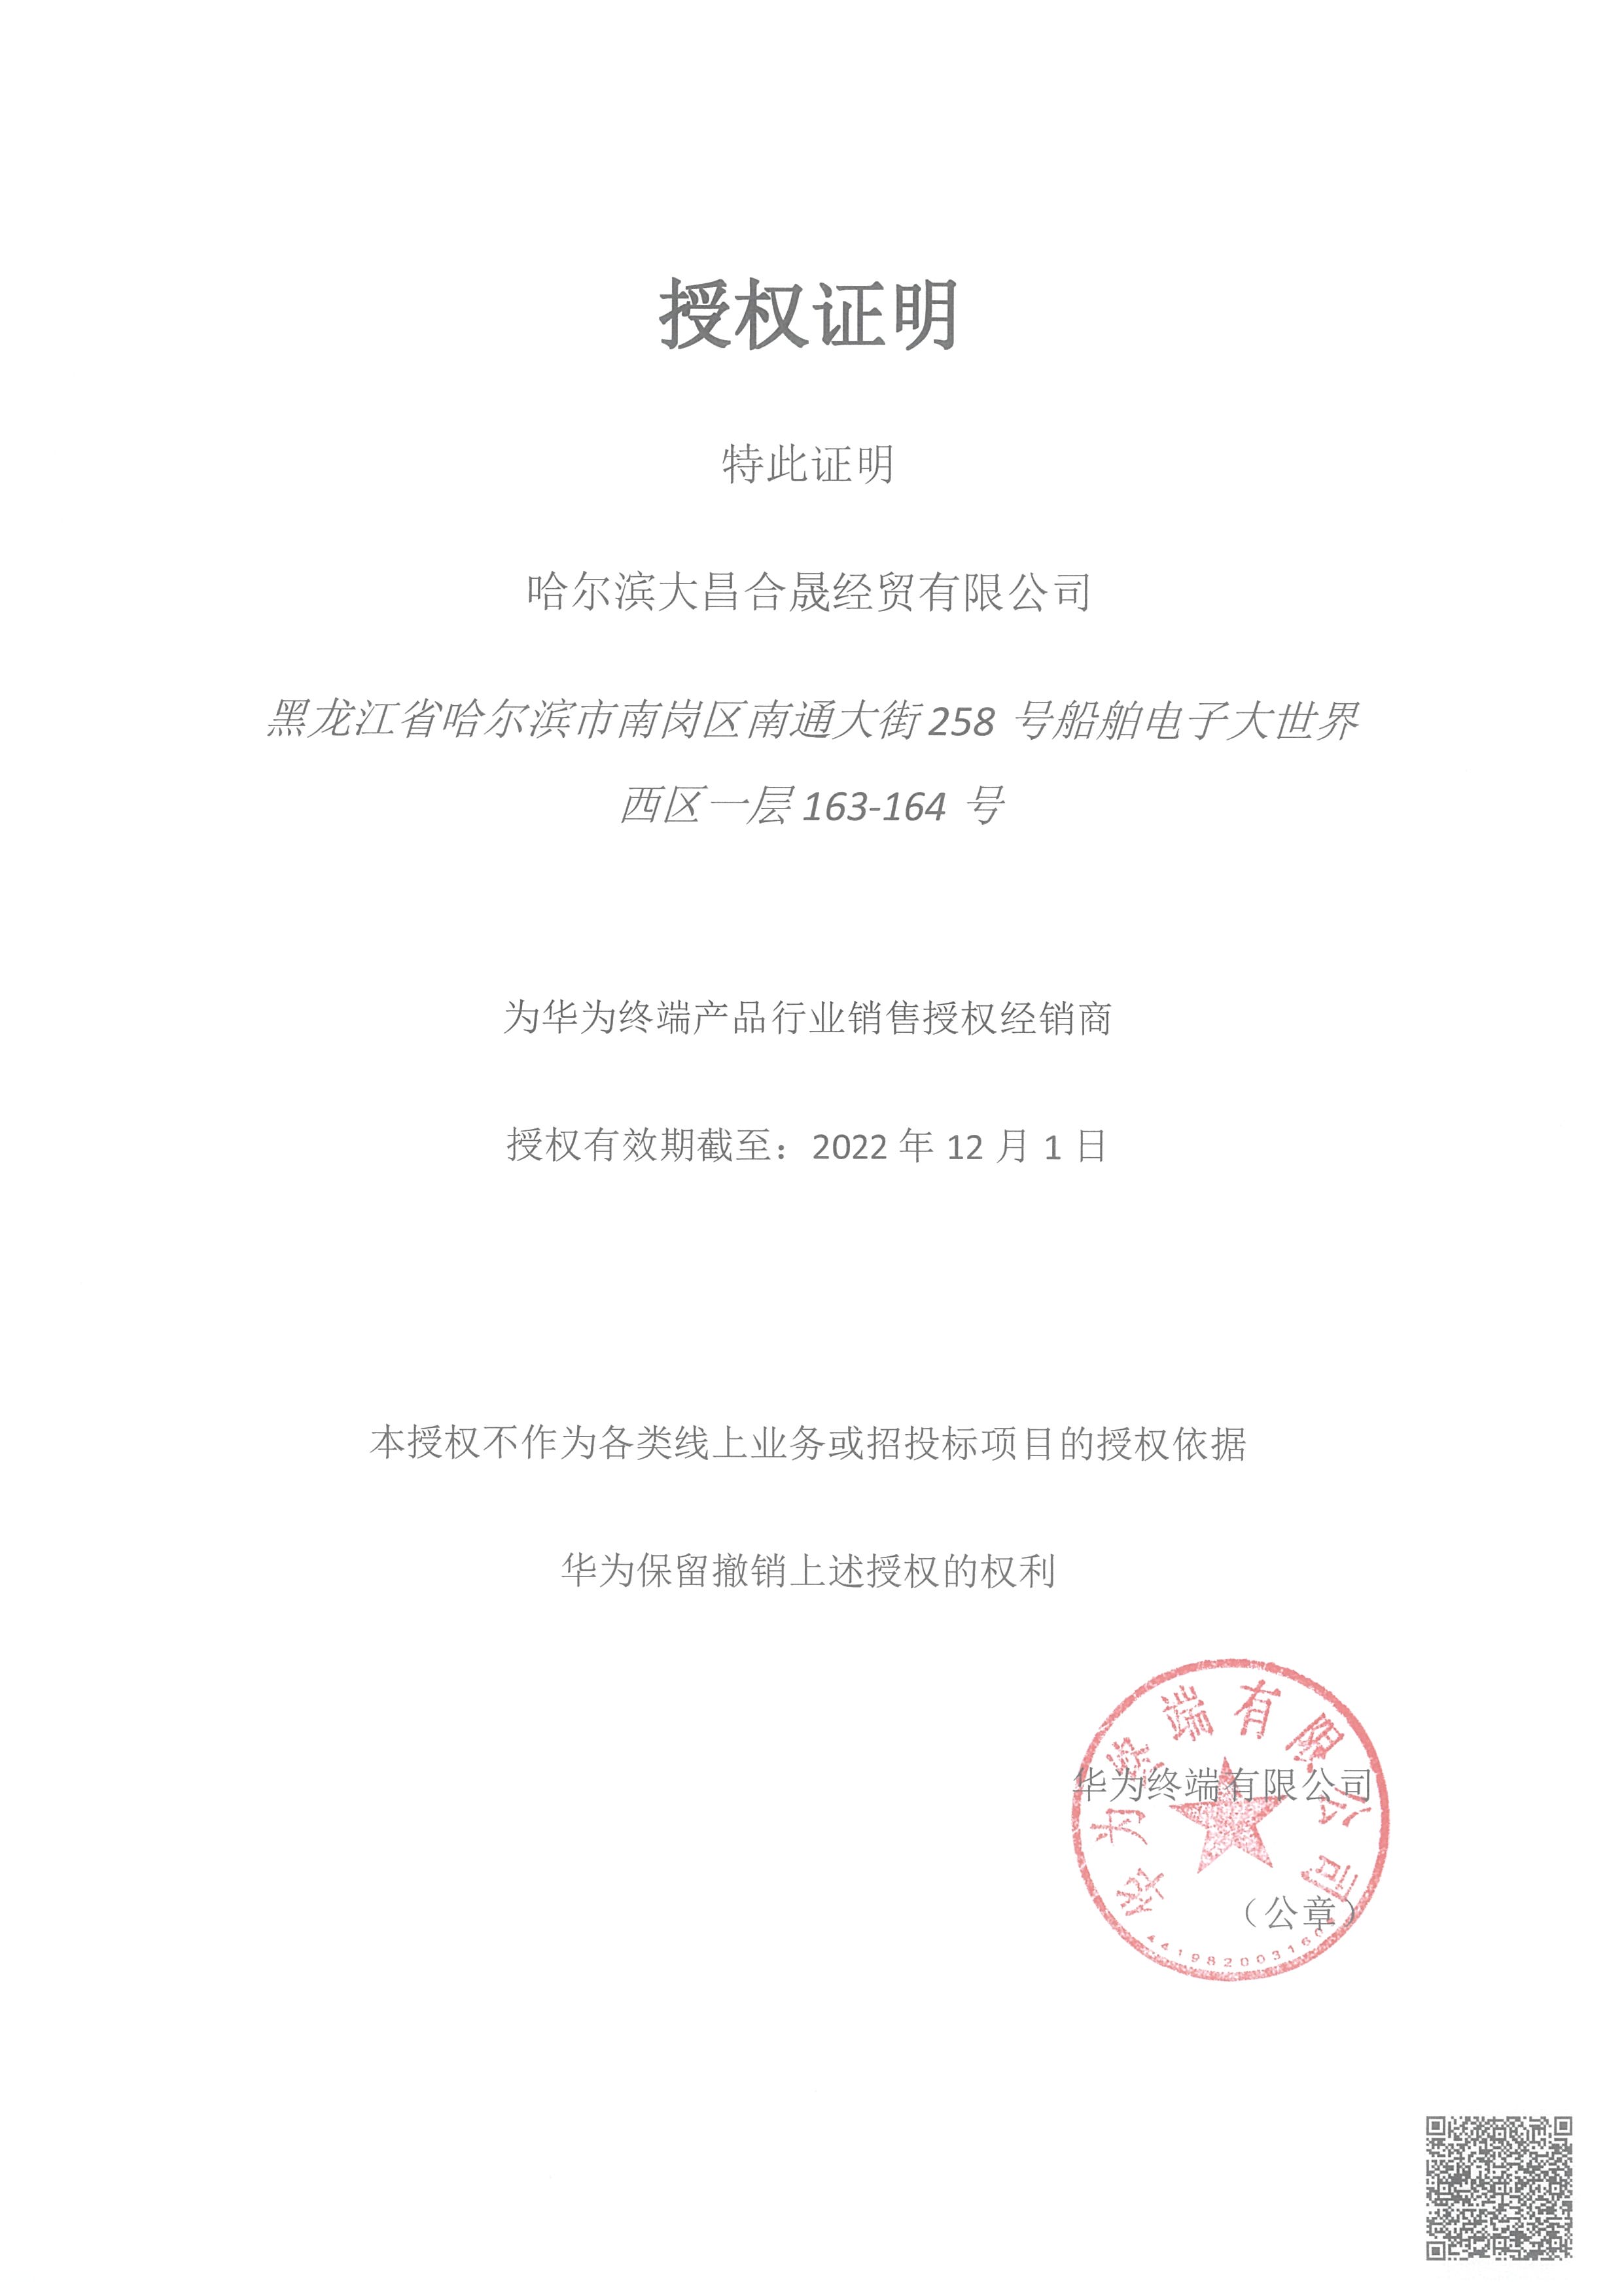 黑龙江省政府采购电子卖场商品销售授权书空白授权 空白授权授权期限2022.12.1.jpg